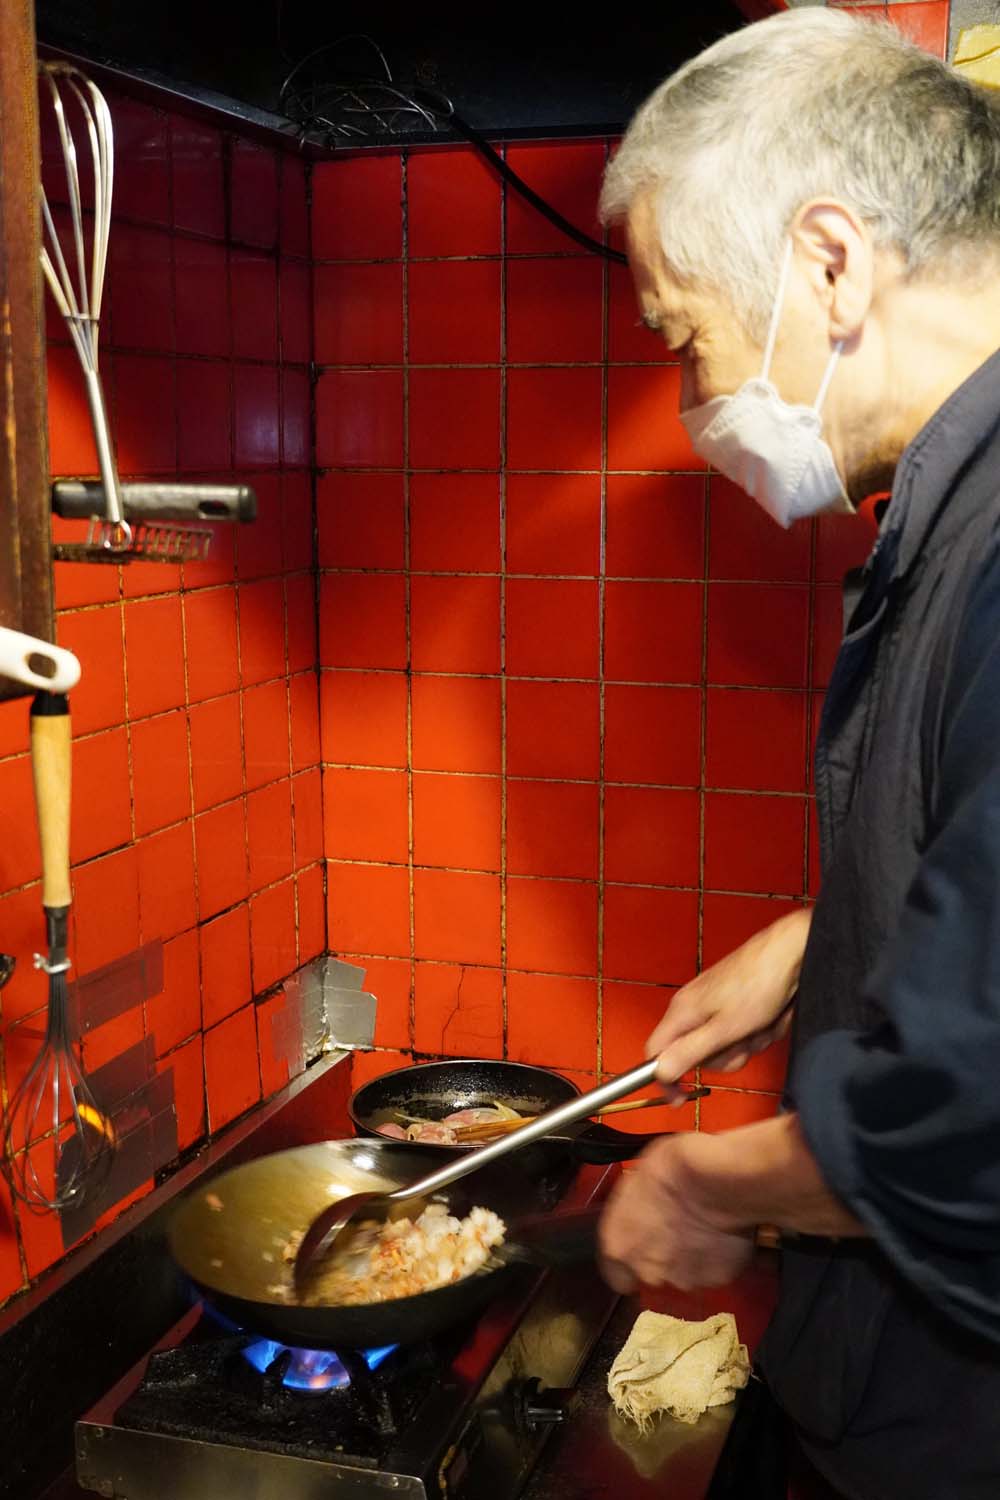 洋二さんは中華料理出身ということもあり、料理は中華鍋で作ることが多い。